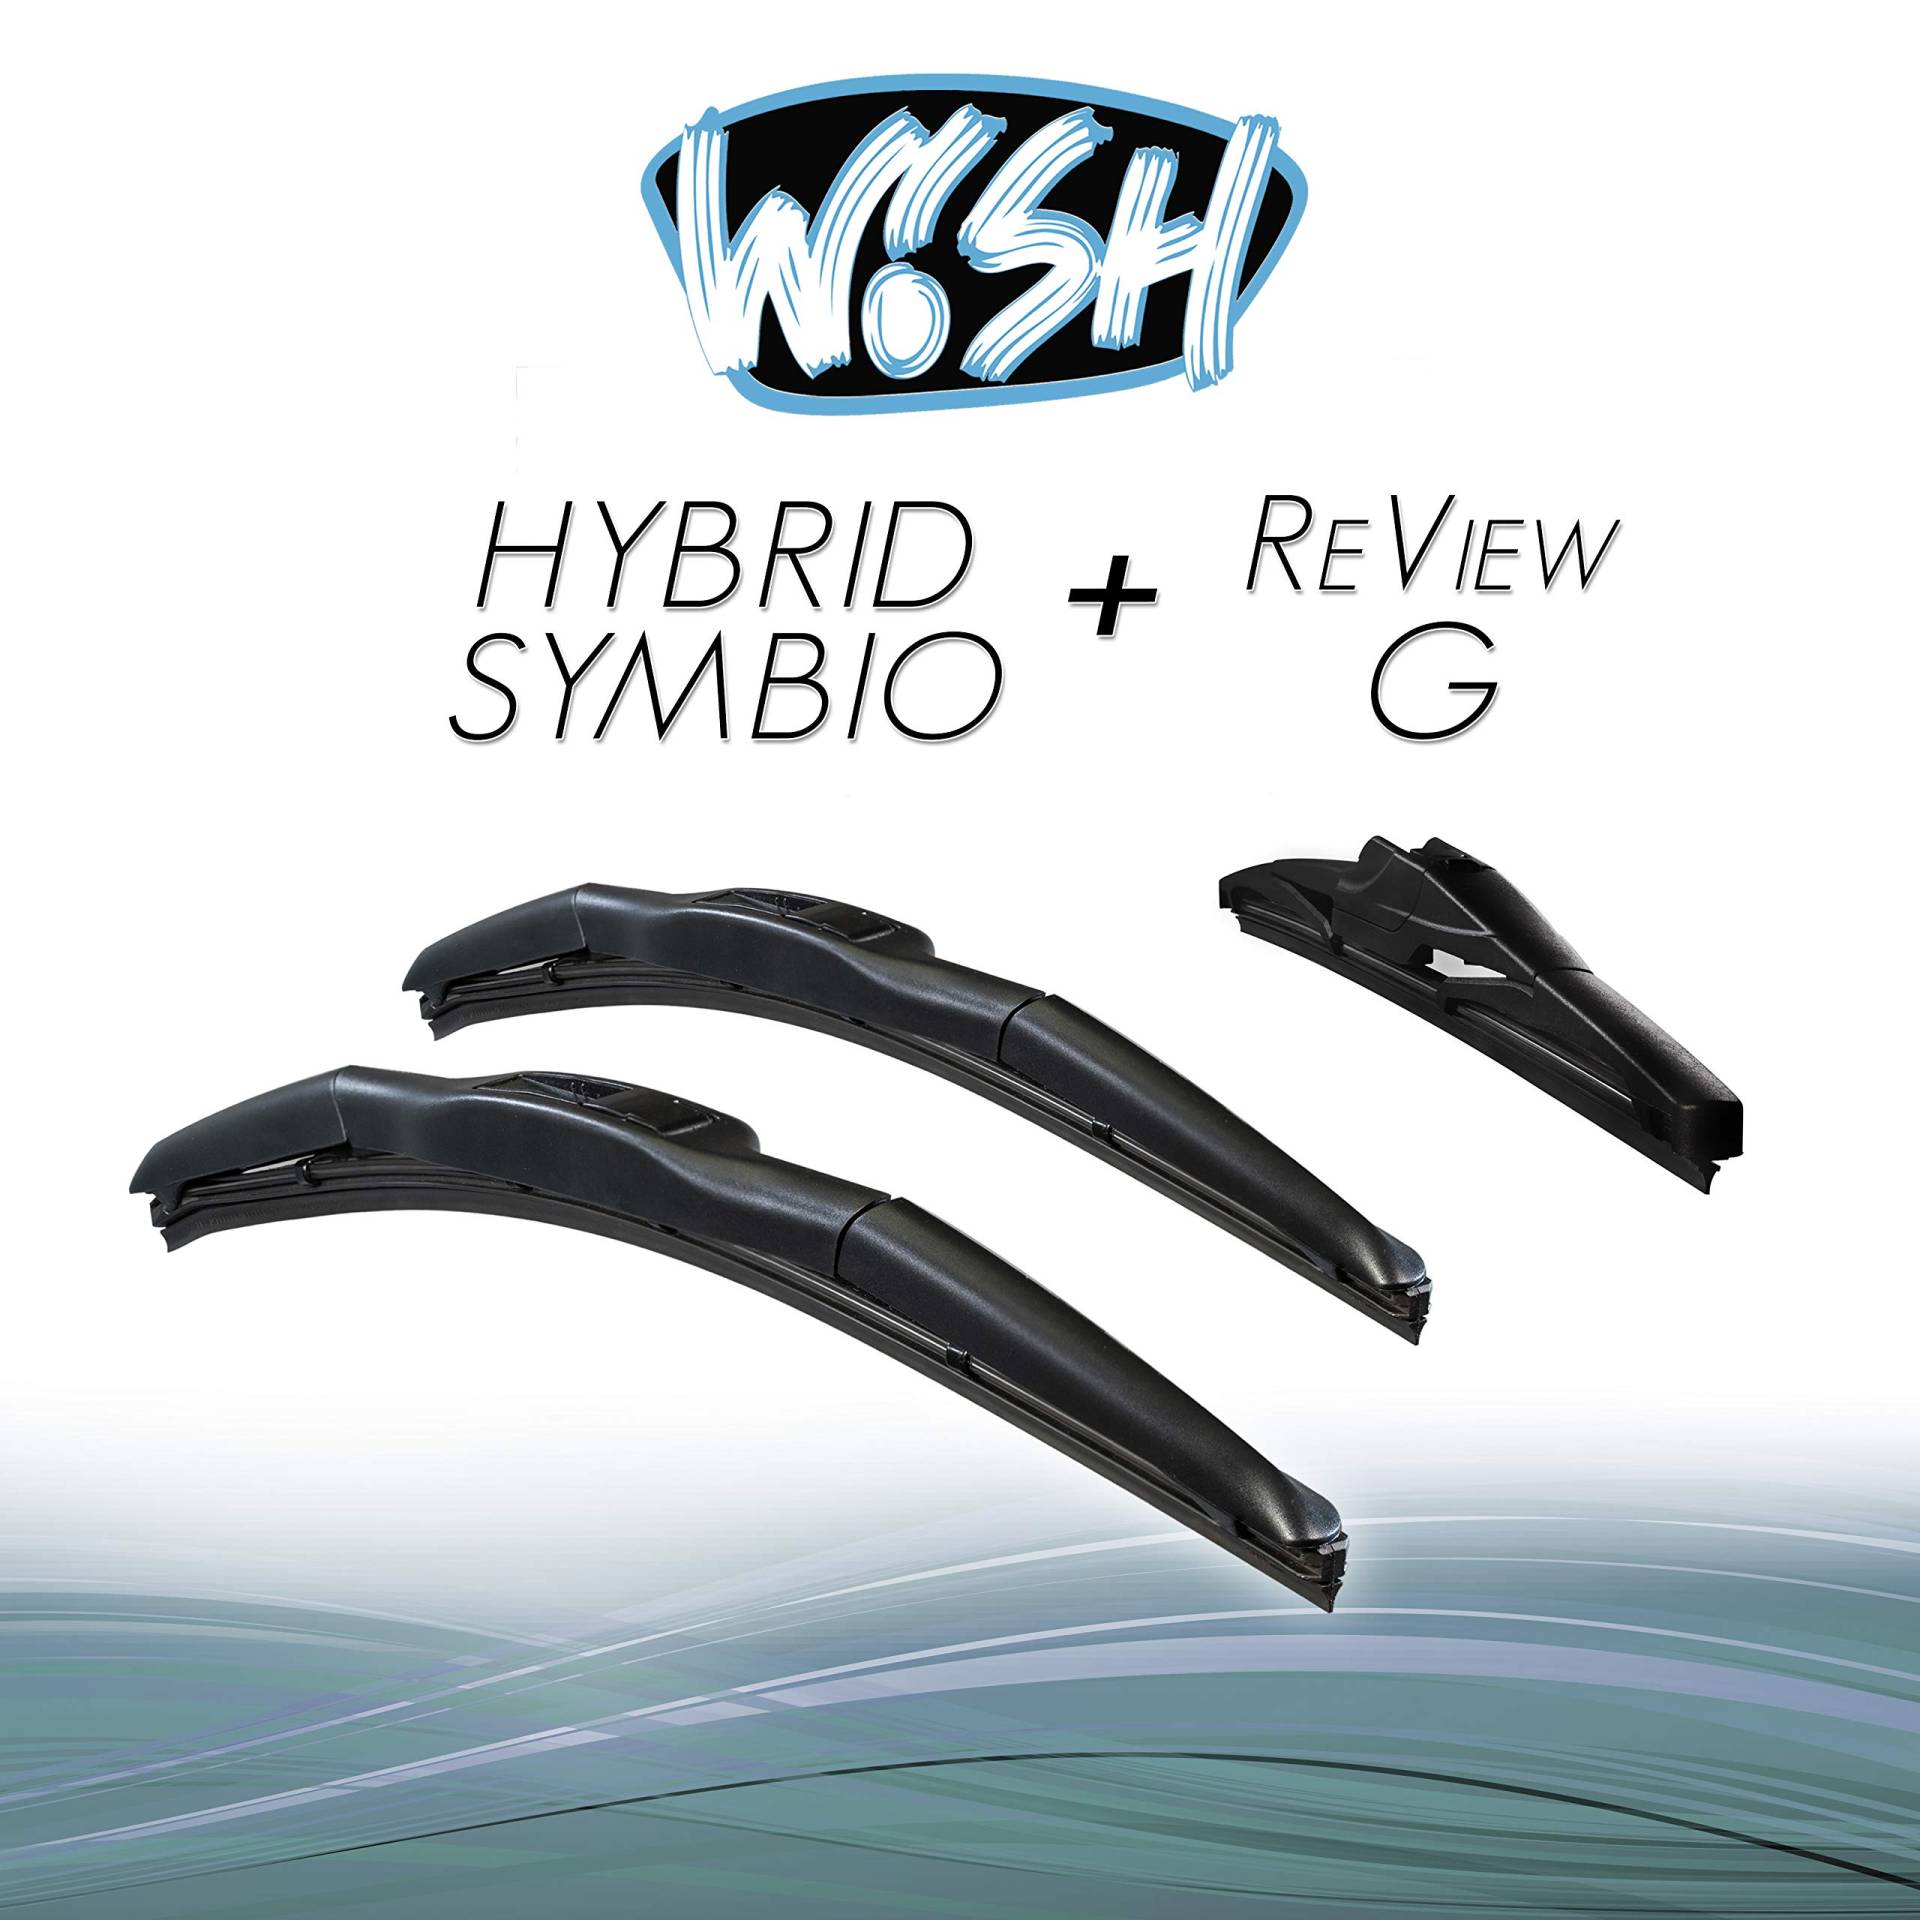 Wish® Hybrid Symbio Satz Front + Heck Scheibenwischer Länge: 21" 530mm / 18" 450mm / 11" 280mm Wischblätter Vorne und Hinten Hybrid-Scheibenwischer + Review G HS21.18.RG11 von Wish